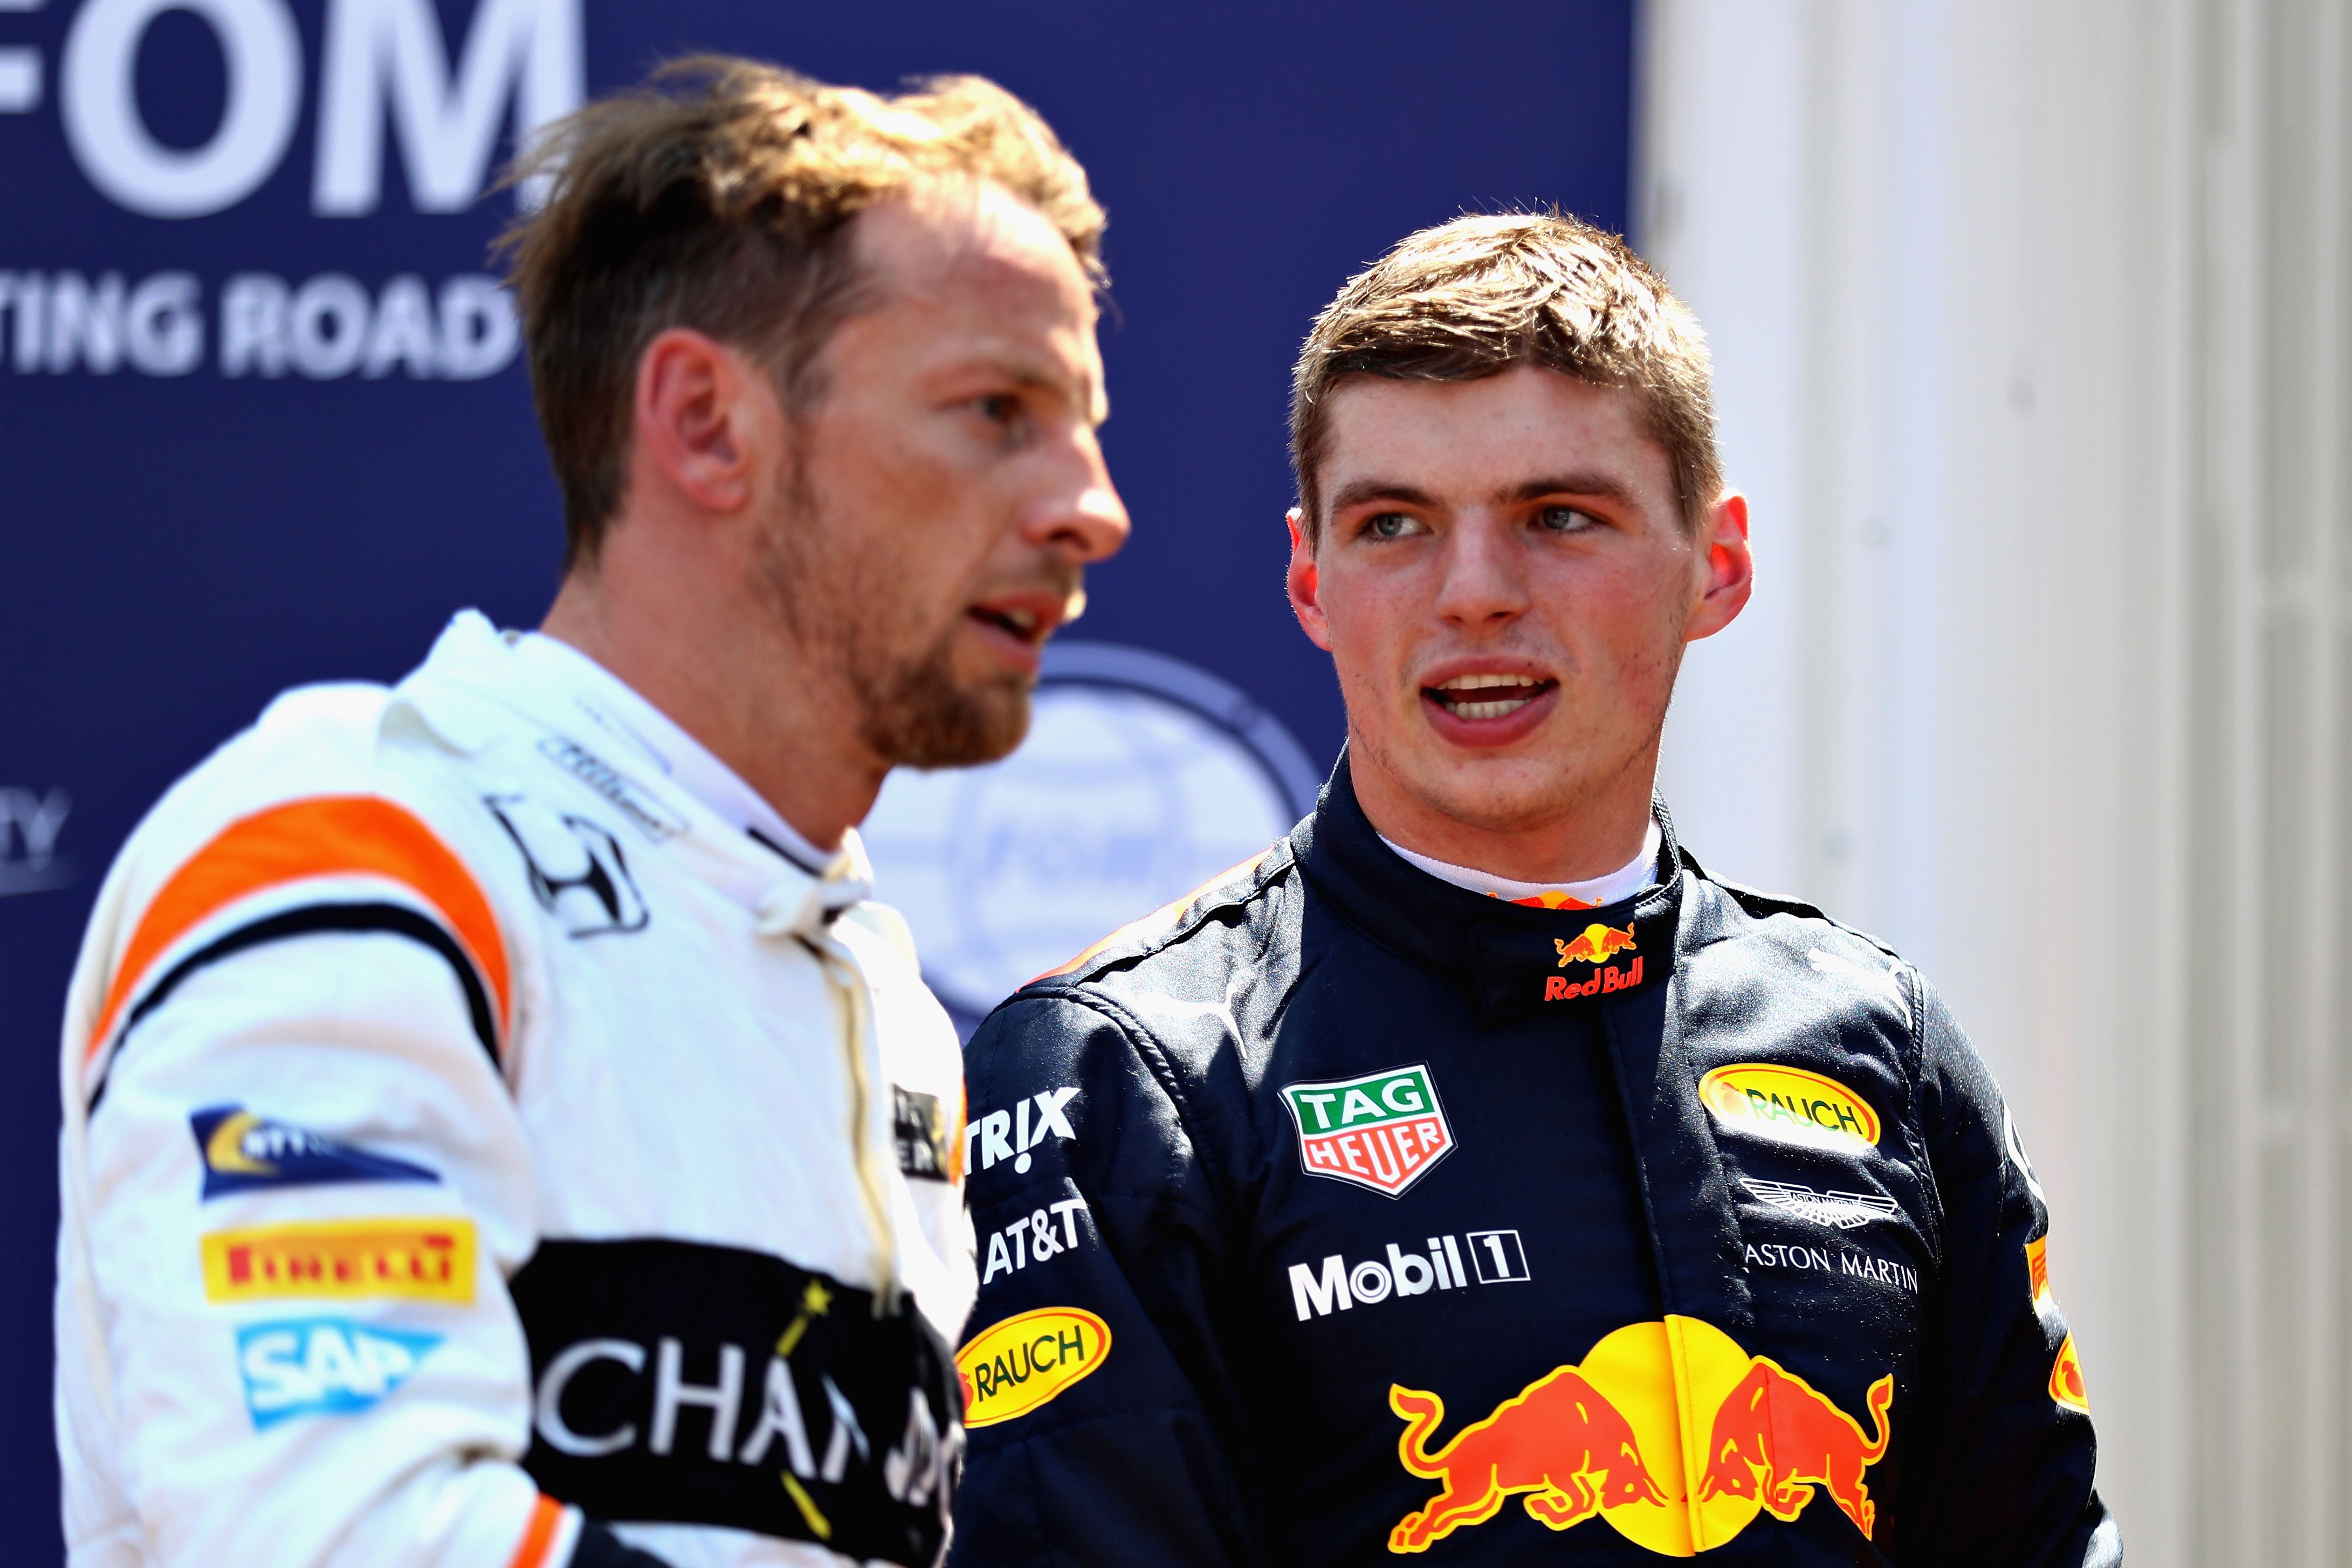 Jenson Button, Max Verstappen